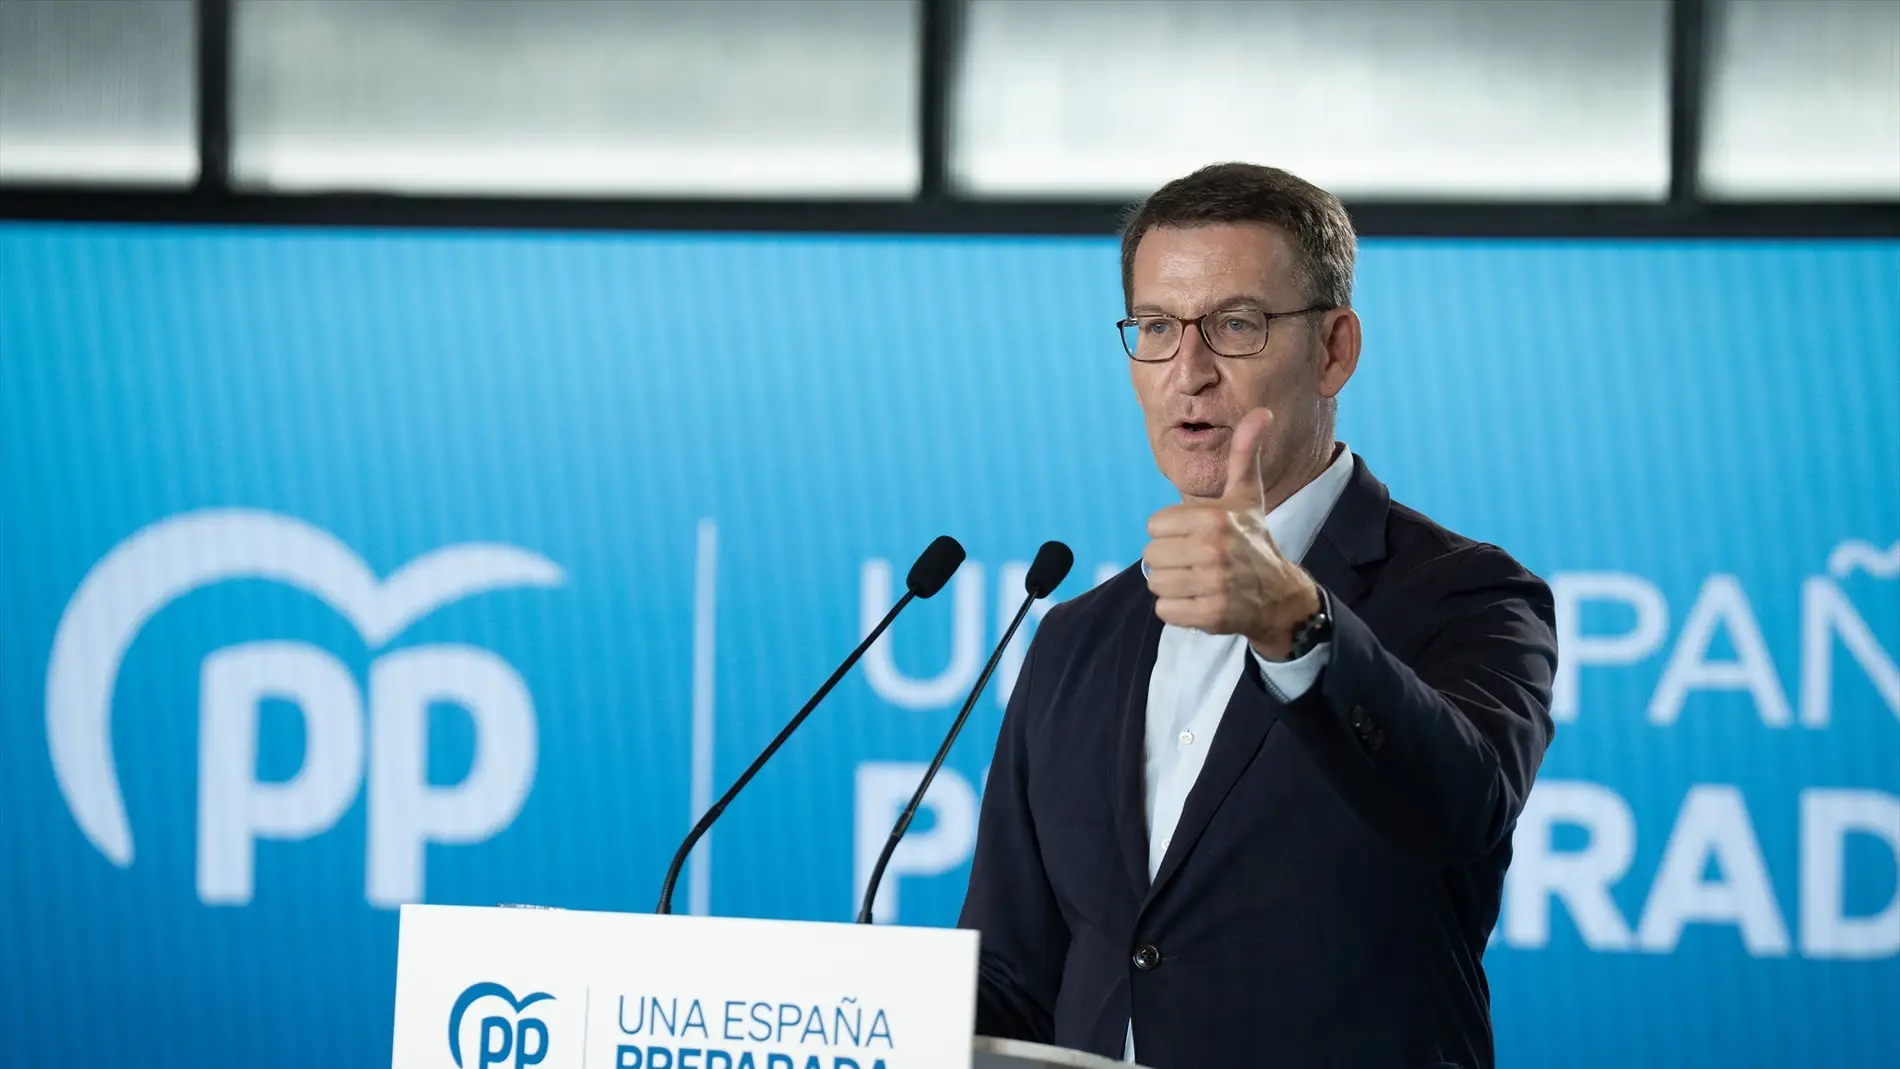 El presidente del PP, Alberto Núñez Feijóo, interviene durante un acto sectorial del Partido Popular sobre economía